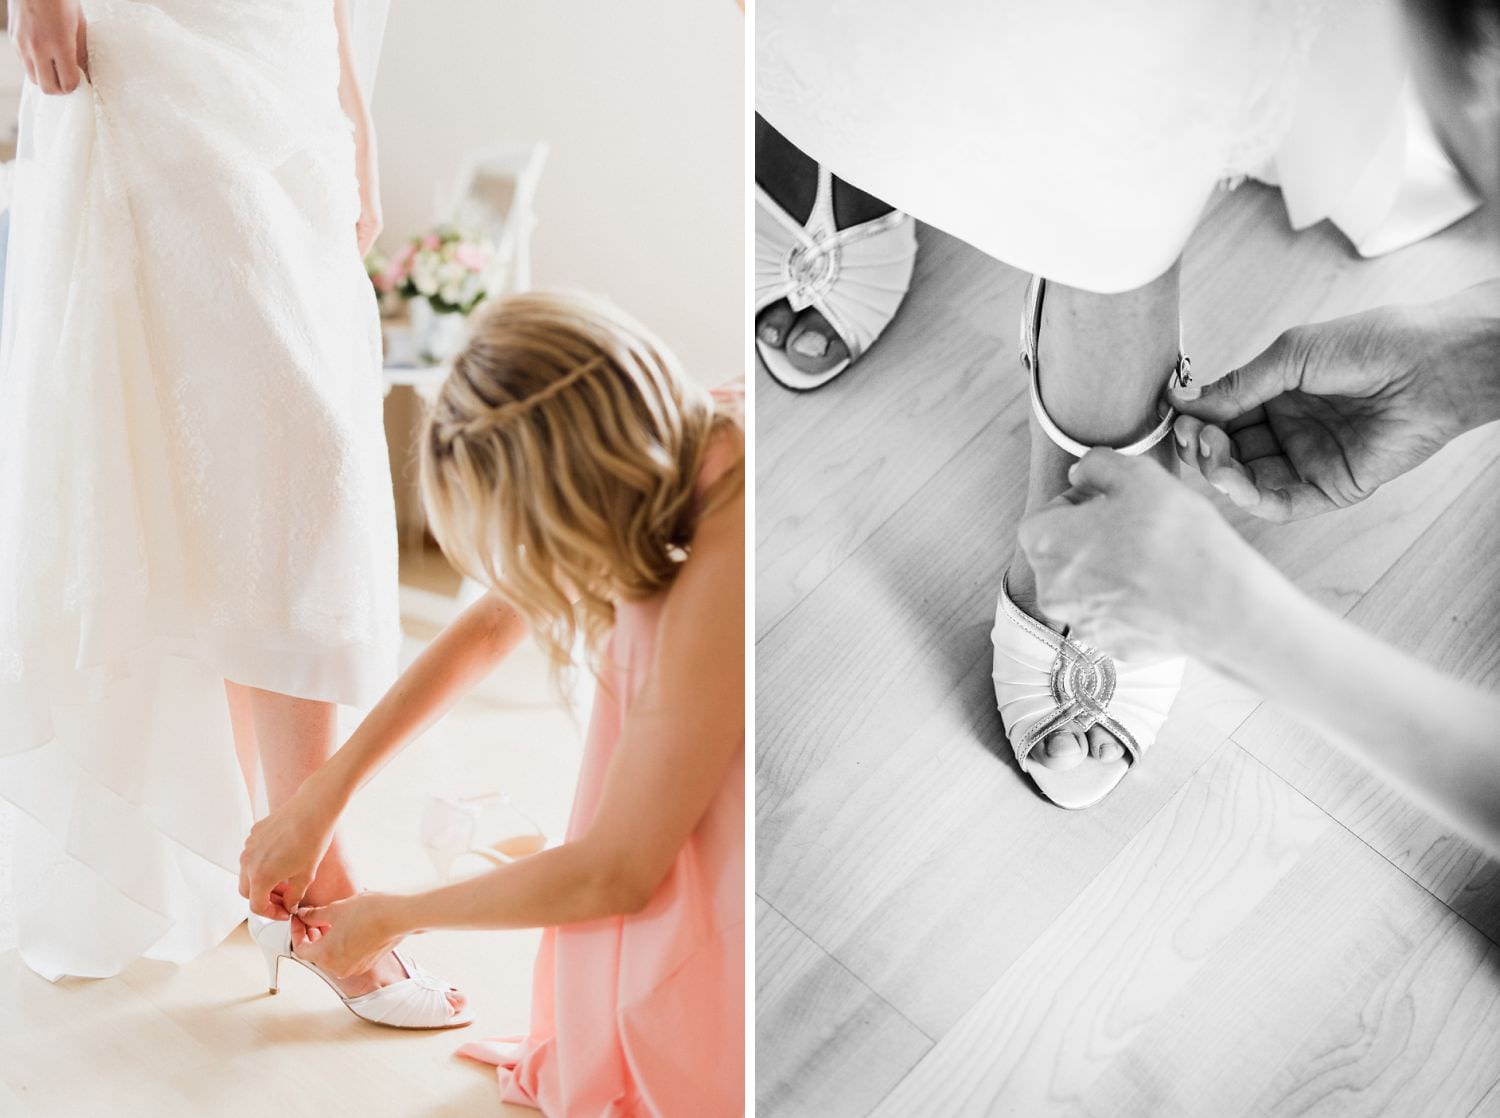 Brautjungfer schließt Schuhe der Braut